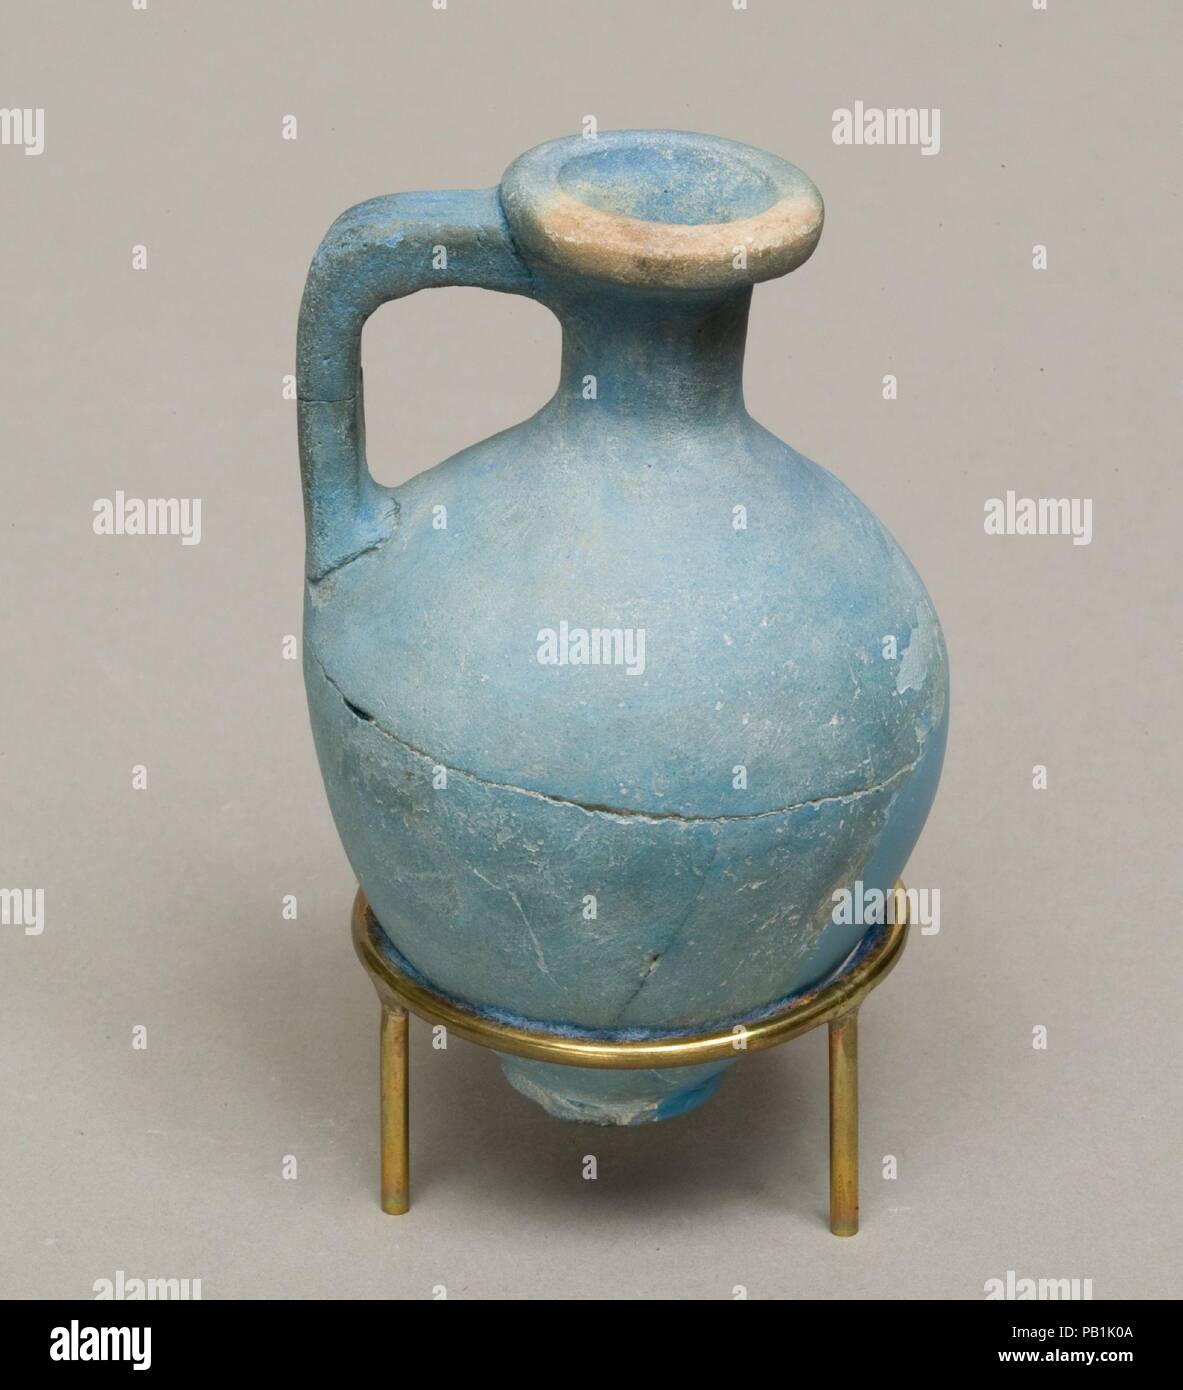 Juglet. Dimensioni: h. 9 cm (3 9/16 in.). Dynasty: Dynasty 13. Data: ca. 1750-1640 A.C. Museo: Metropolitan Museum of Art di New York, Stati Uniti d'America. Foto Stock